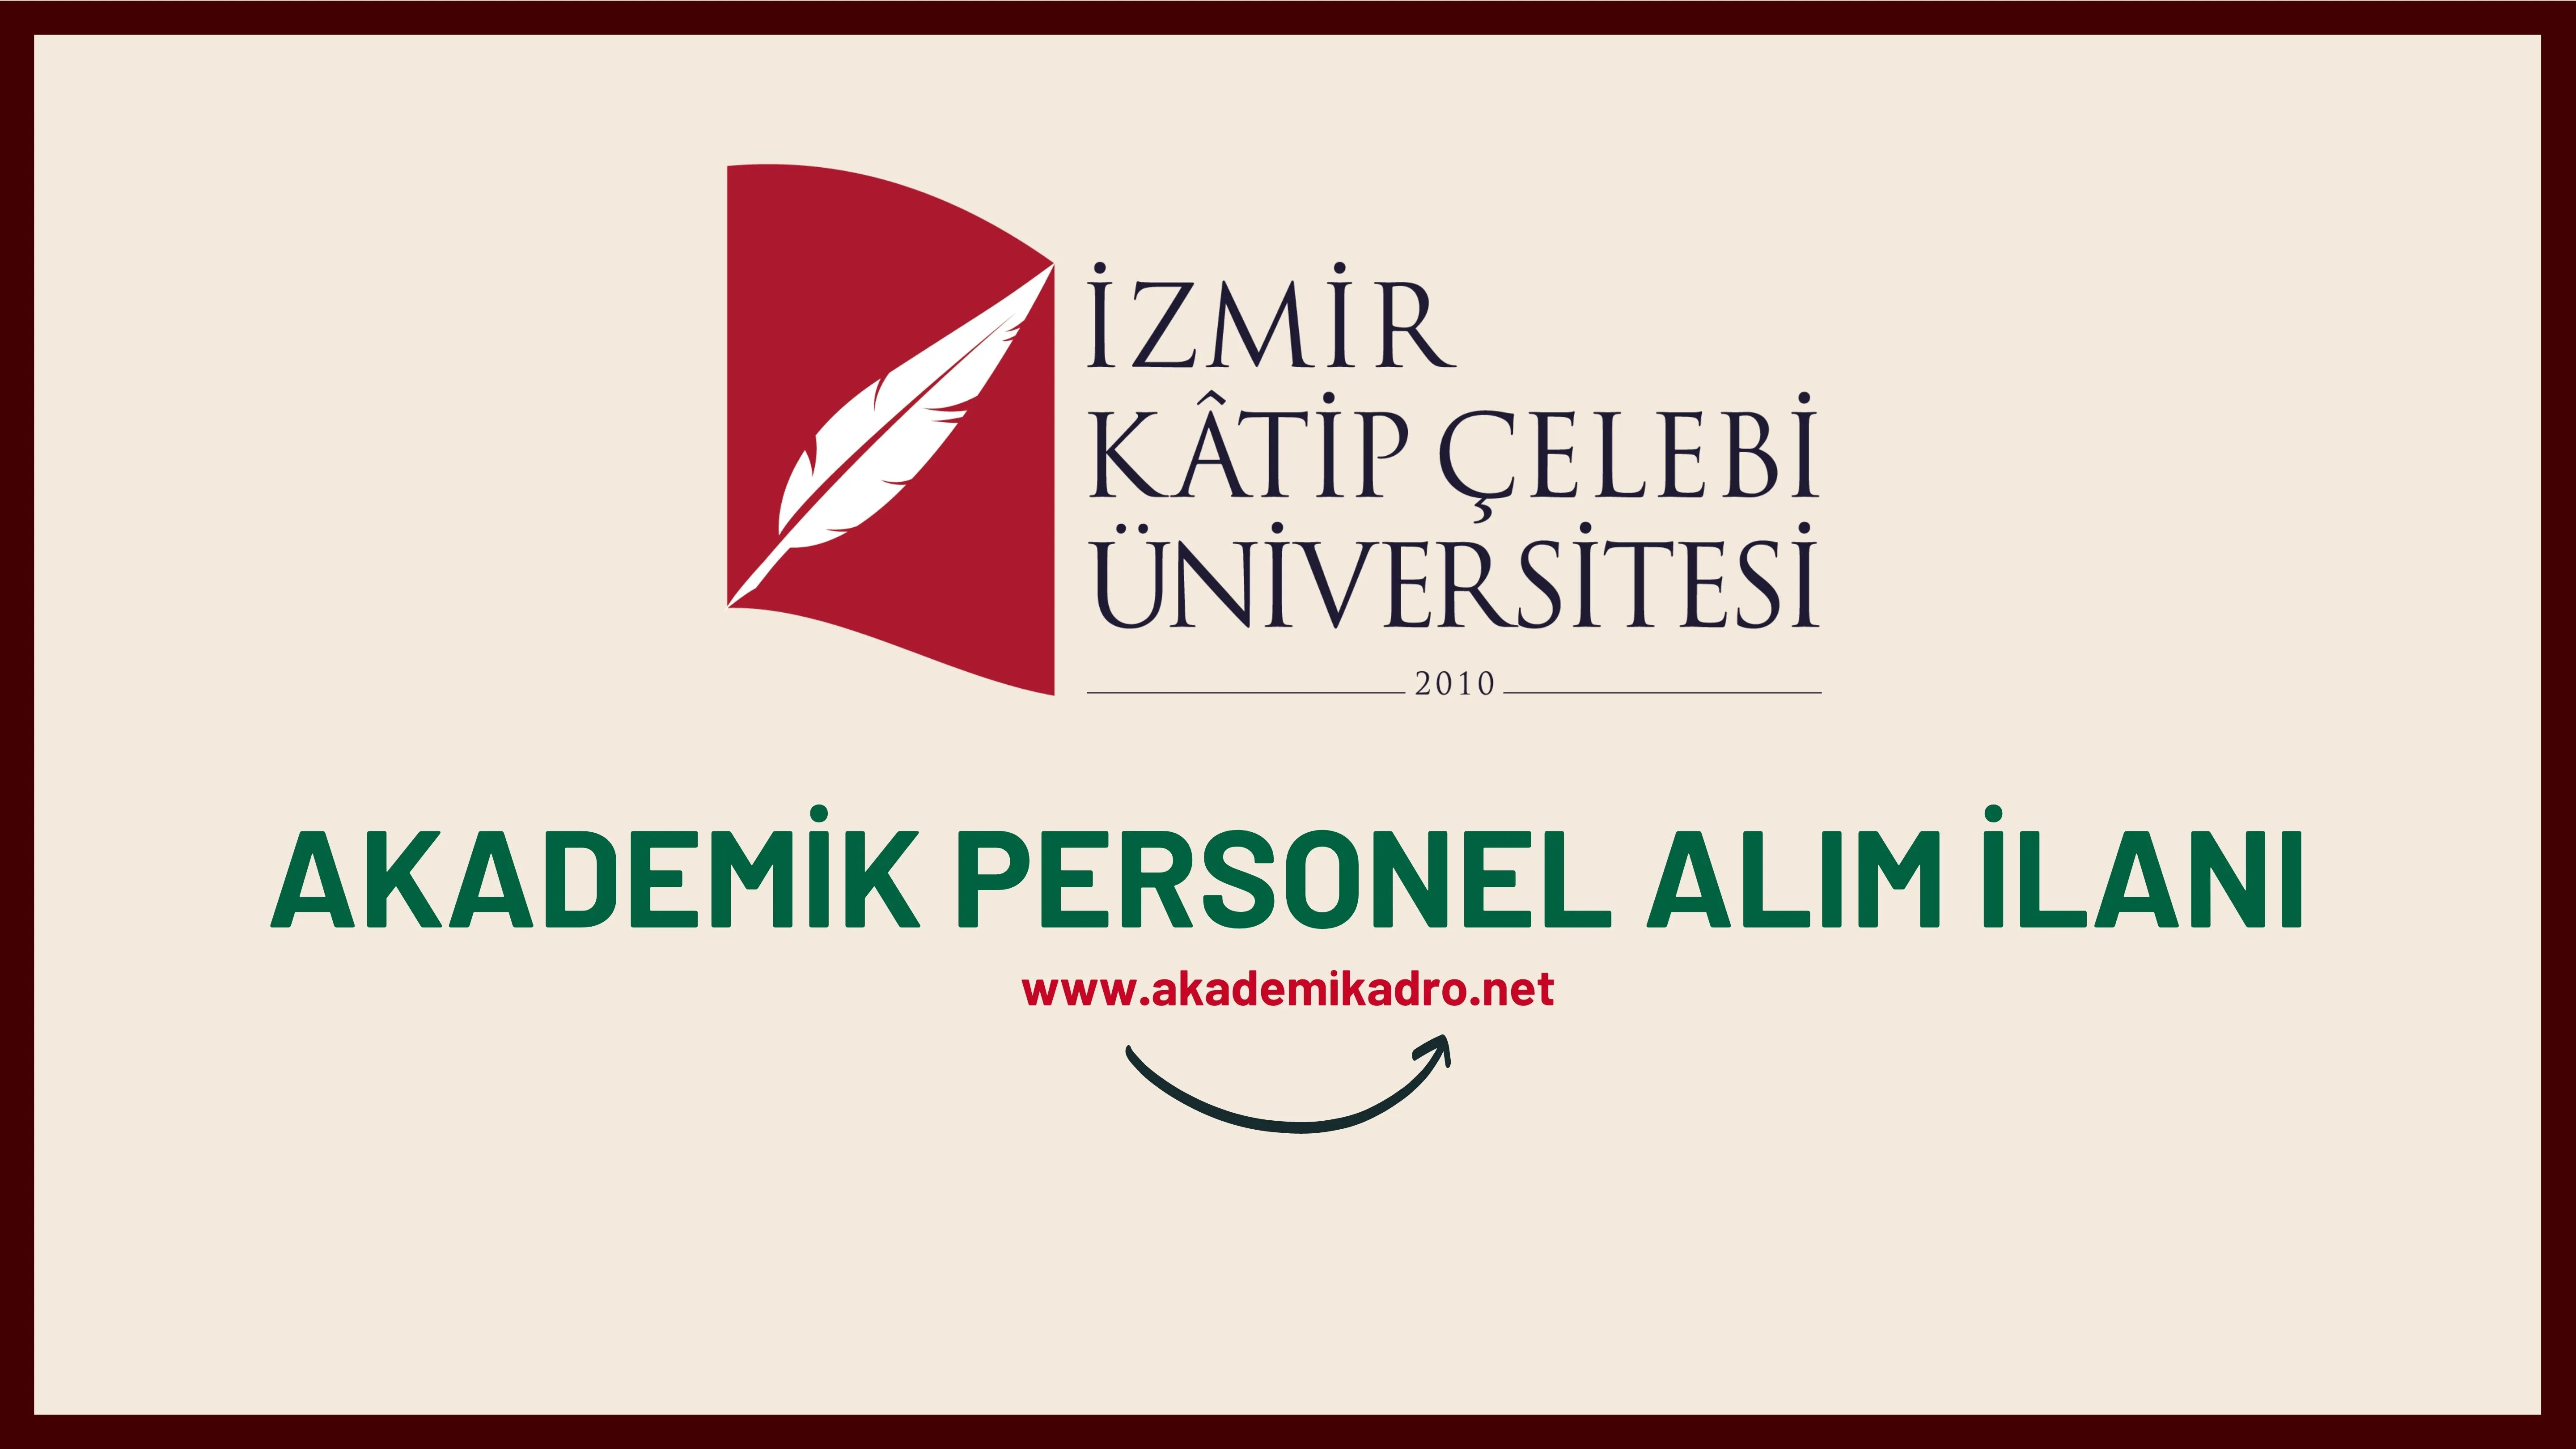 İzmir Katip Çelebi Üniversitesi birçok alandan 23 akademik personel alacak. Son başvuru tarihi 03 Ekim 2022.